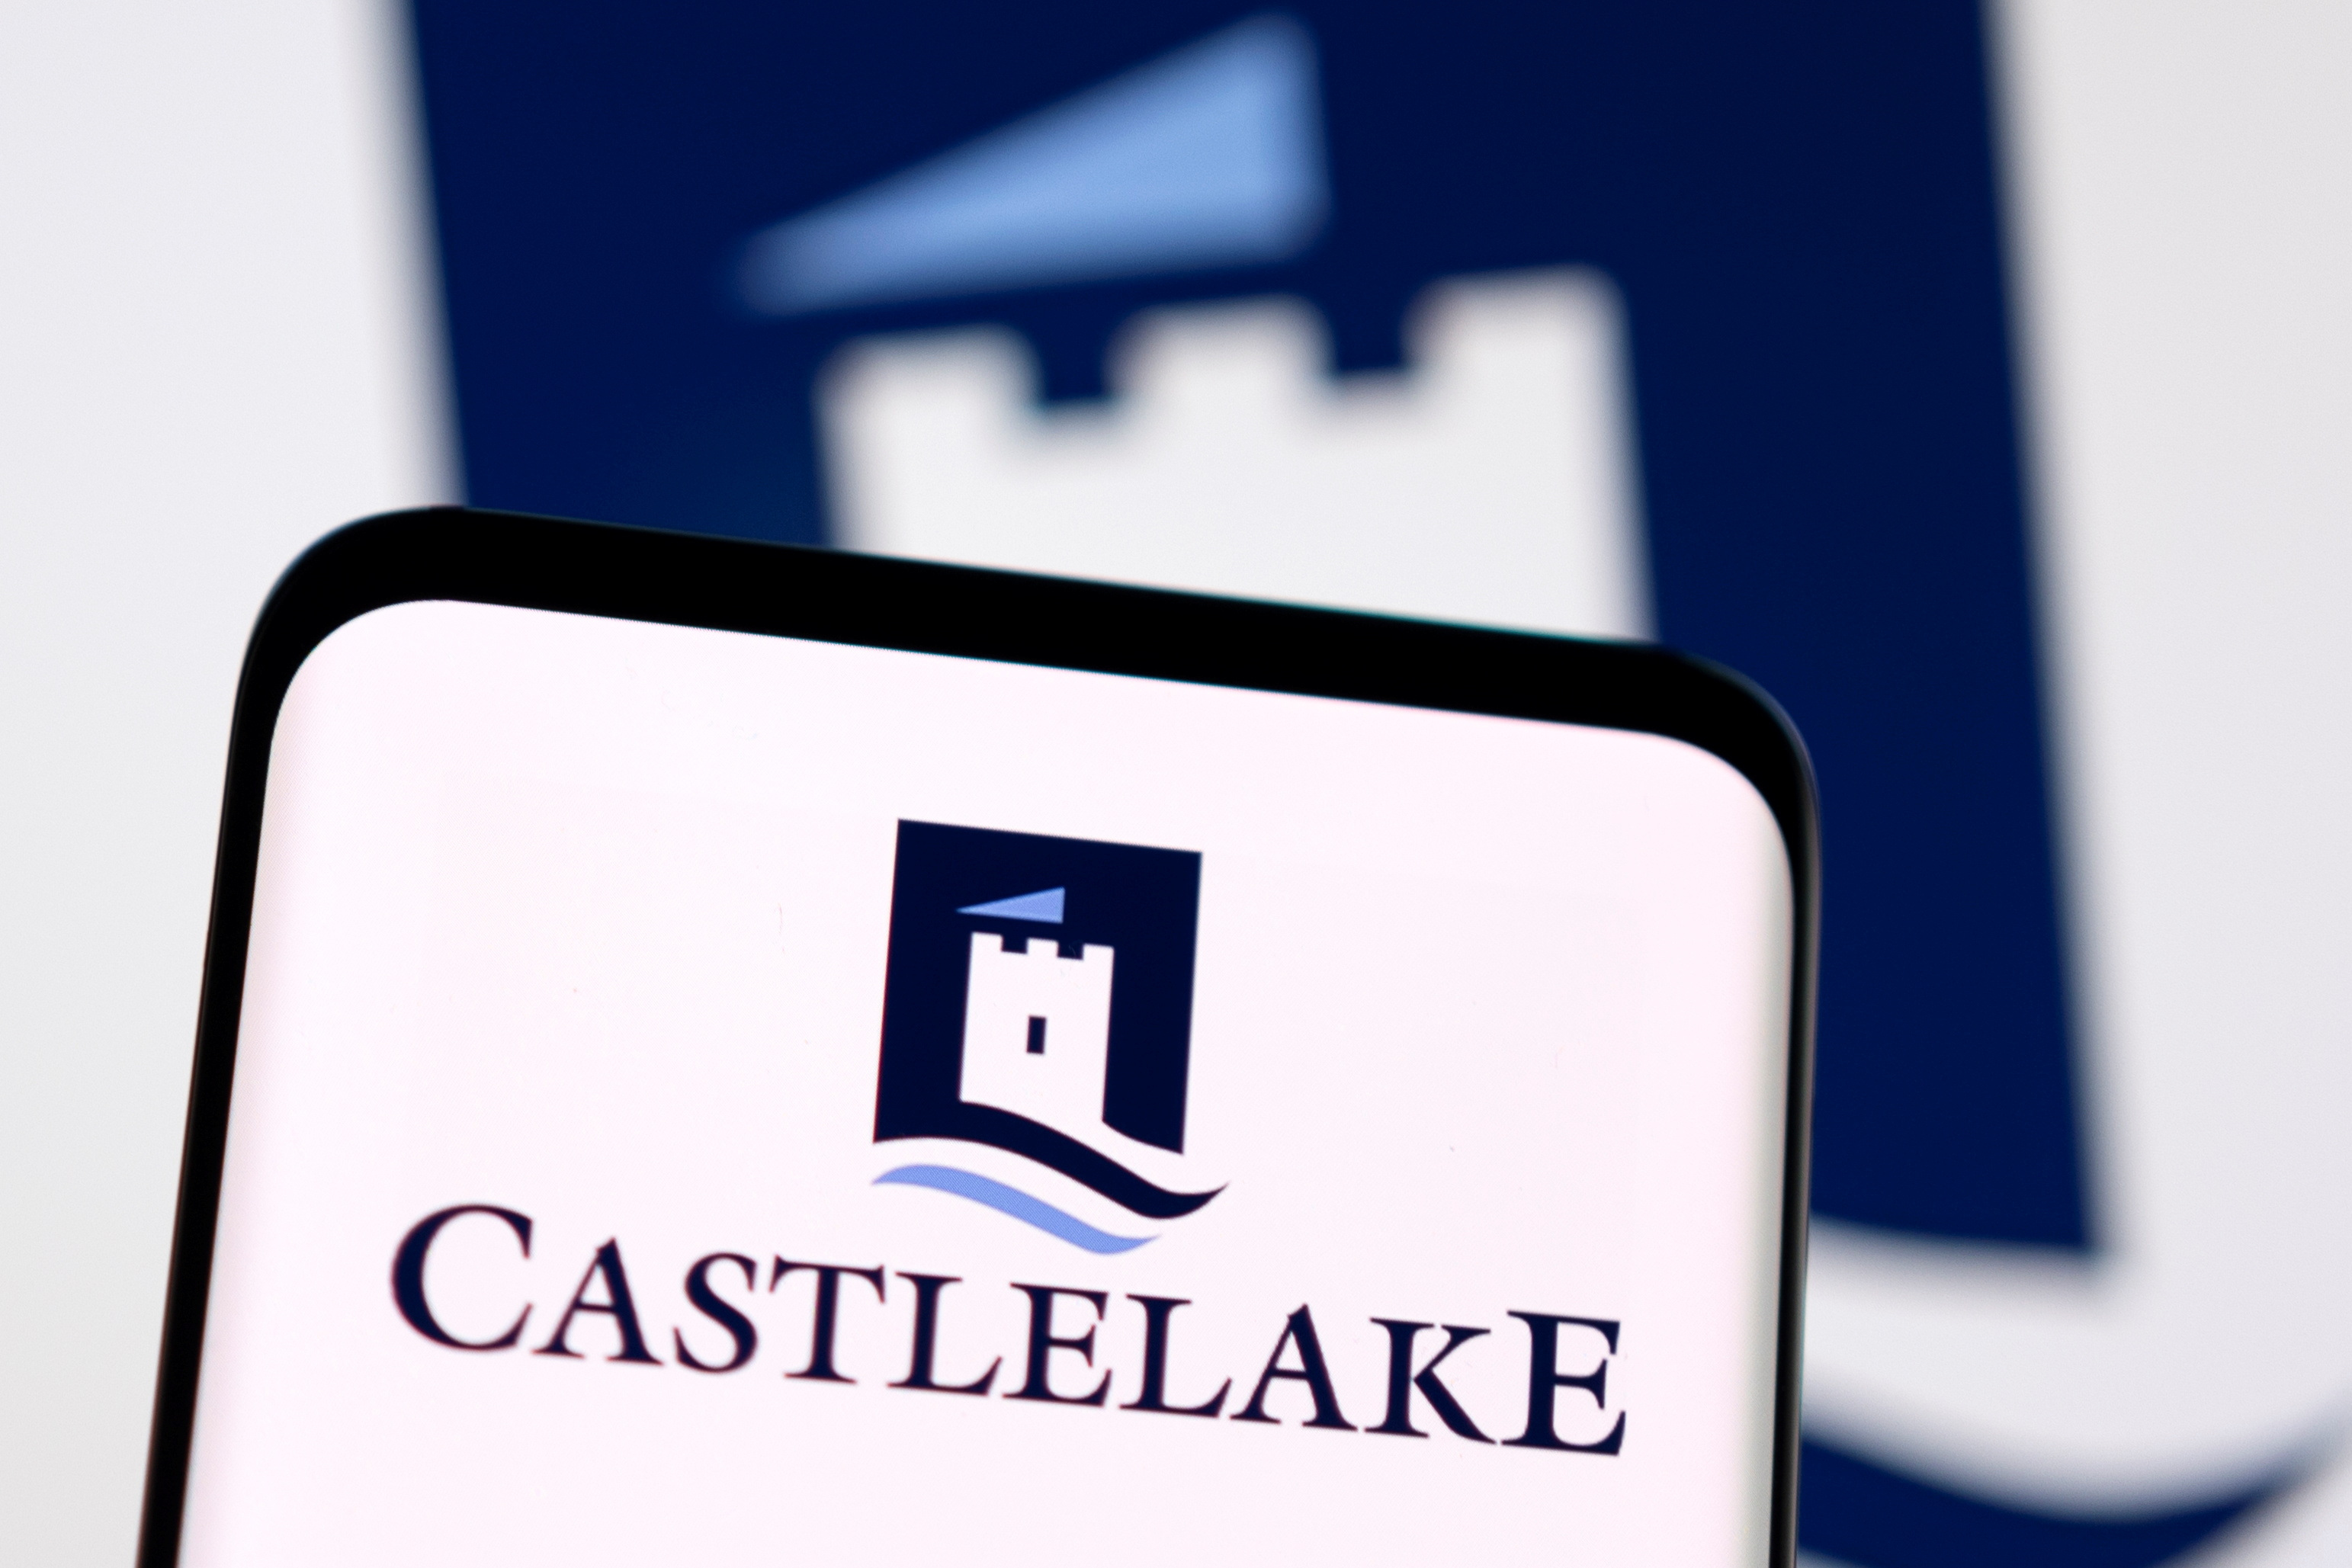 Illustration shows Castlelake logo